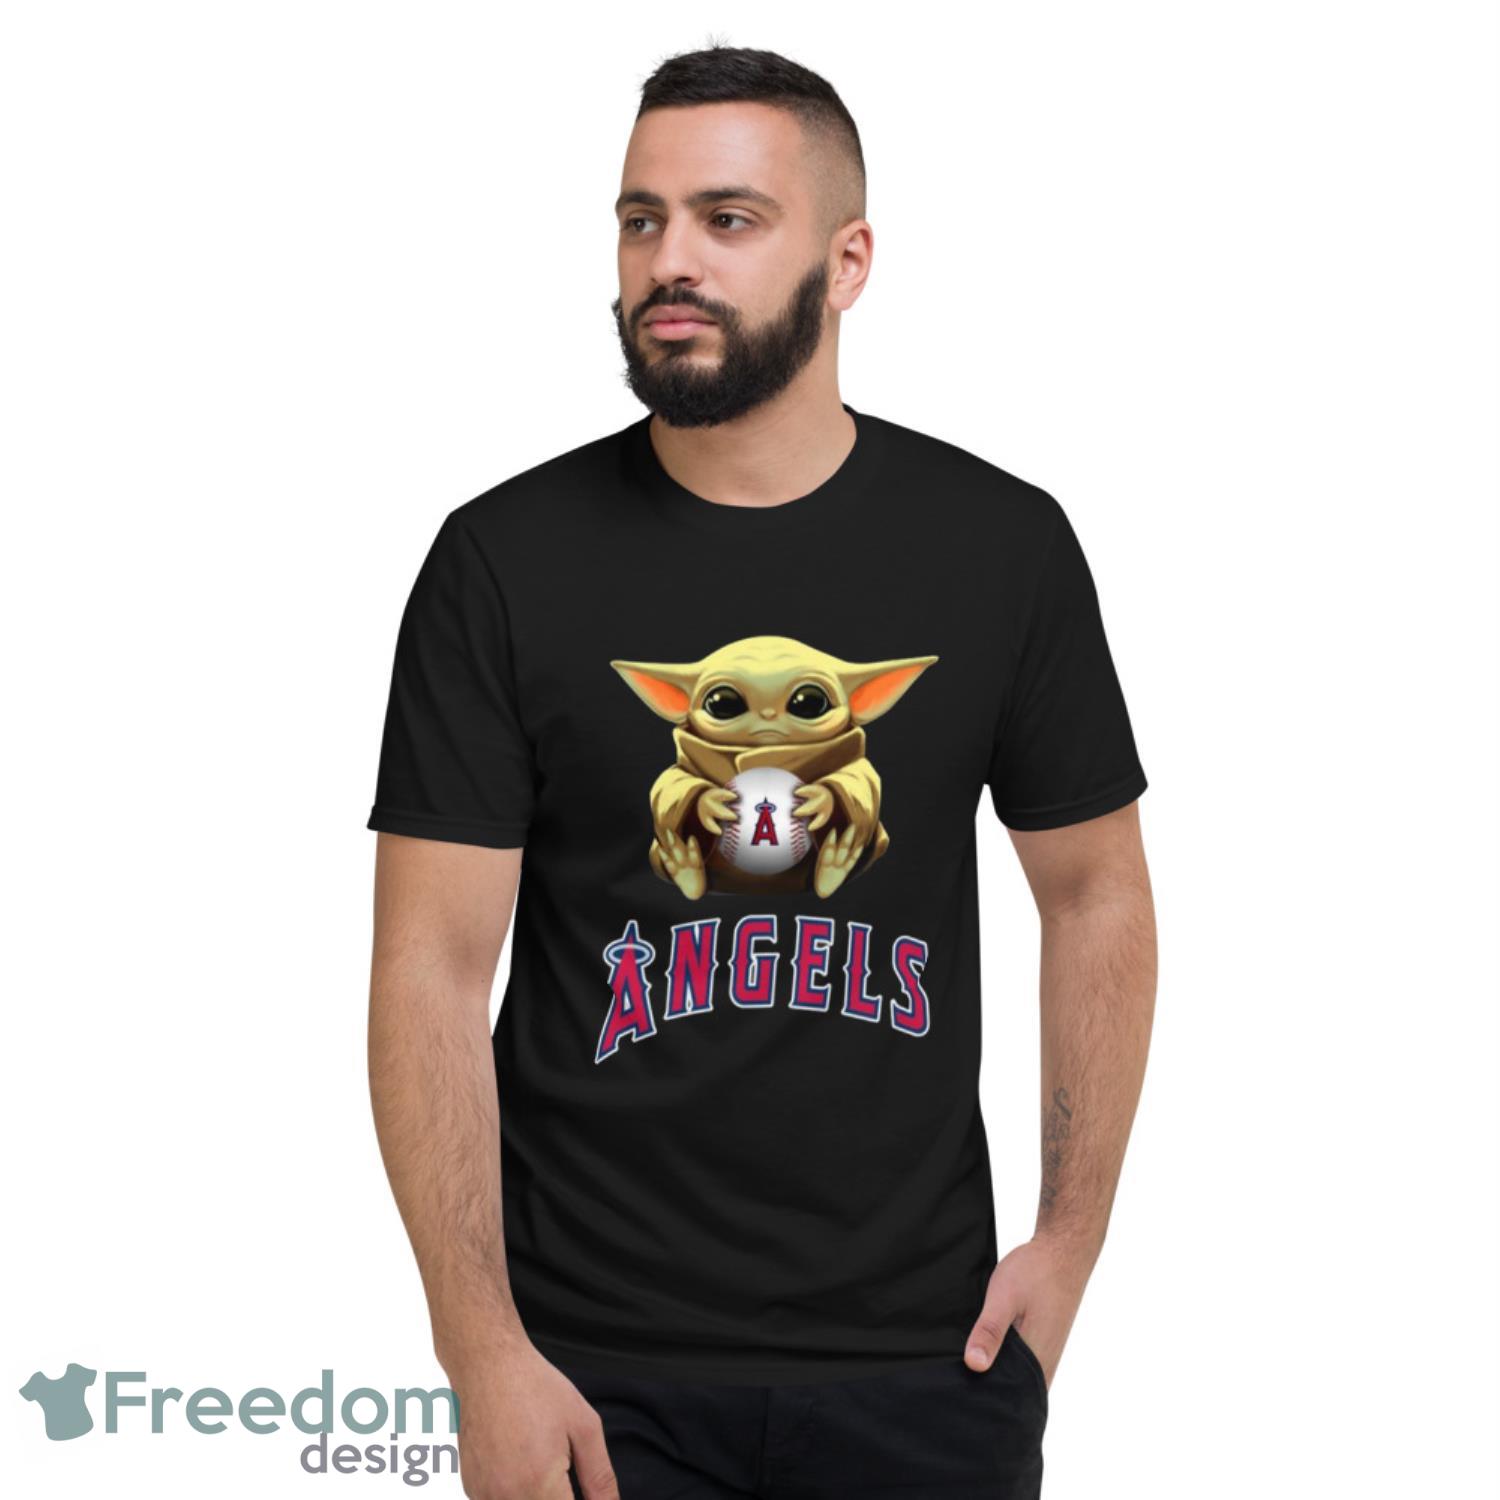 MLB Baseball Los Angeles Angels Star Wars Baby Yoda Shirt T Shirt -  Freedomdesign